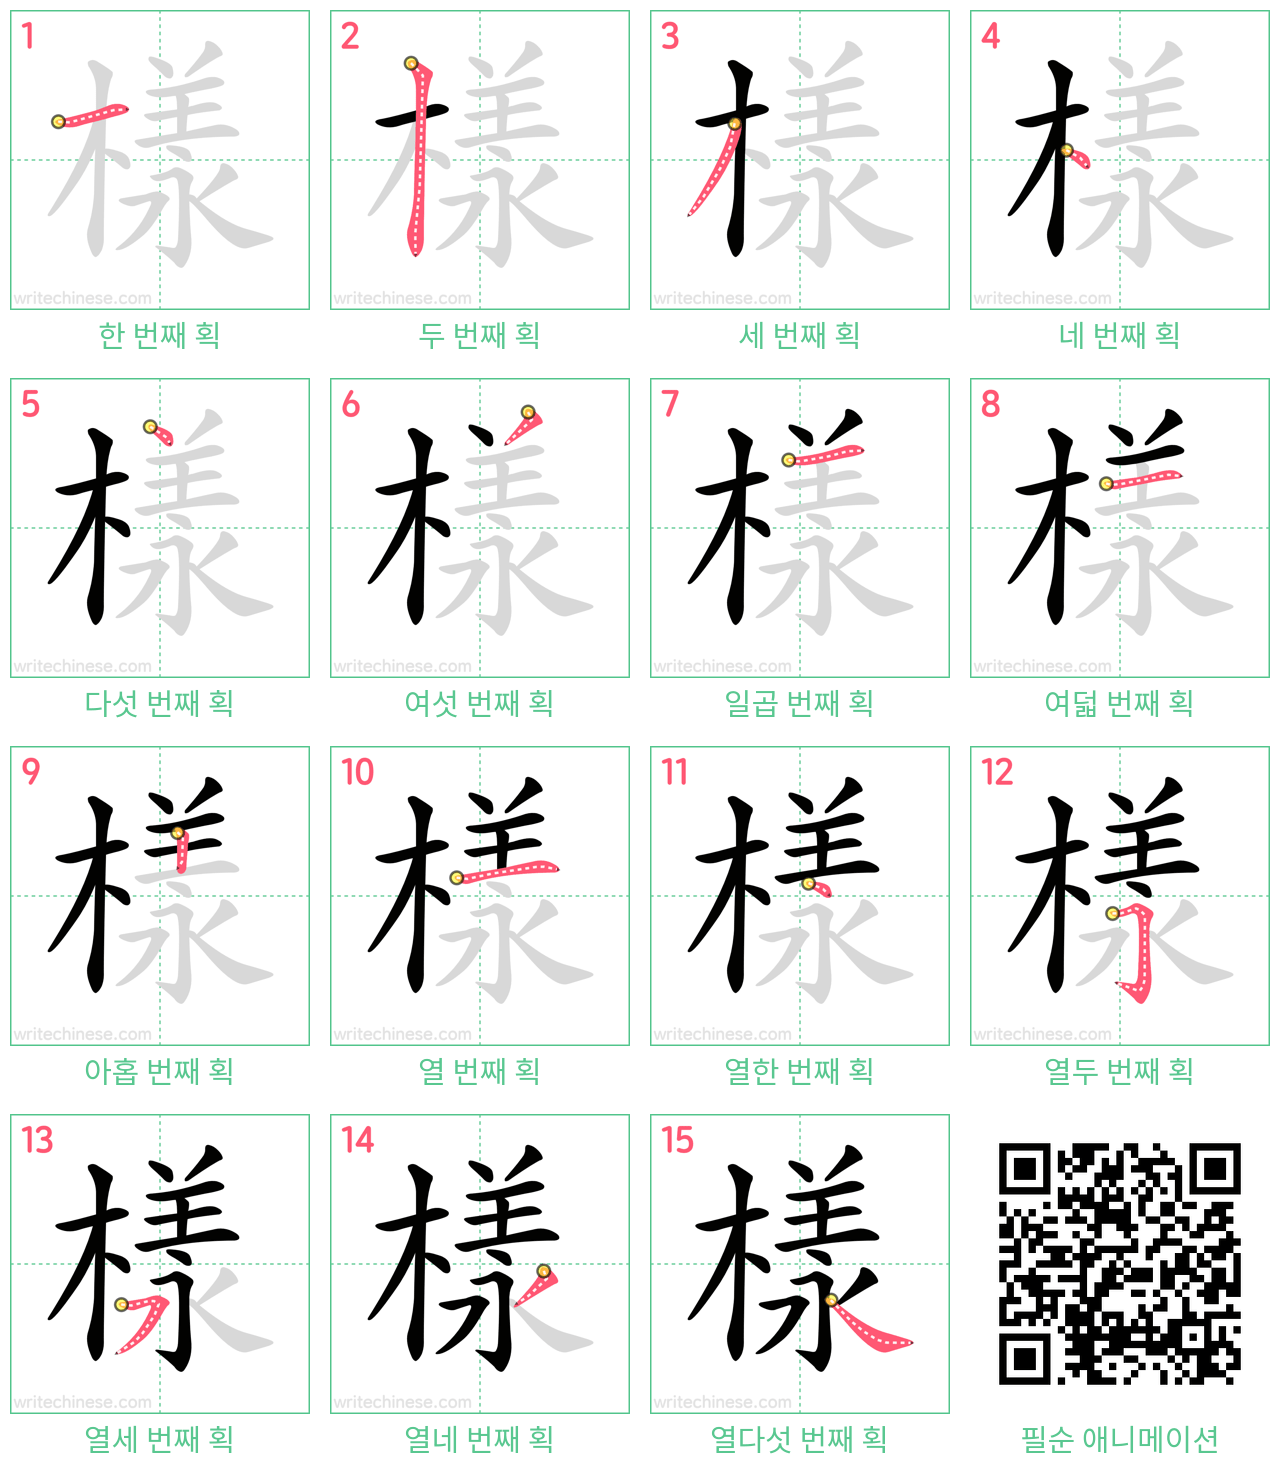 樣 step-by-step stroke order diagrams